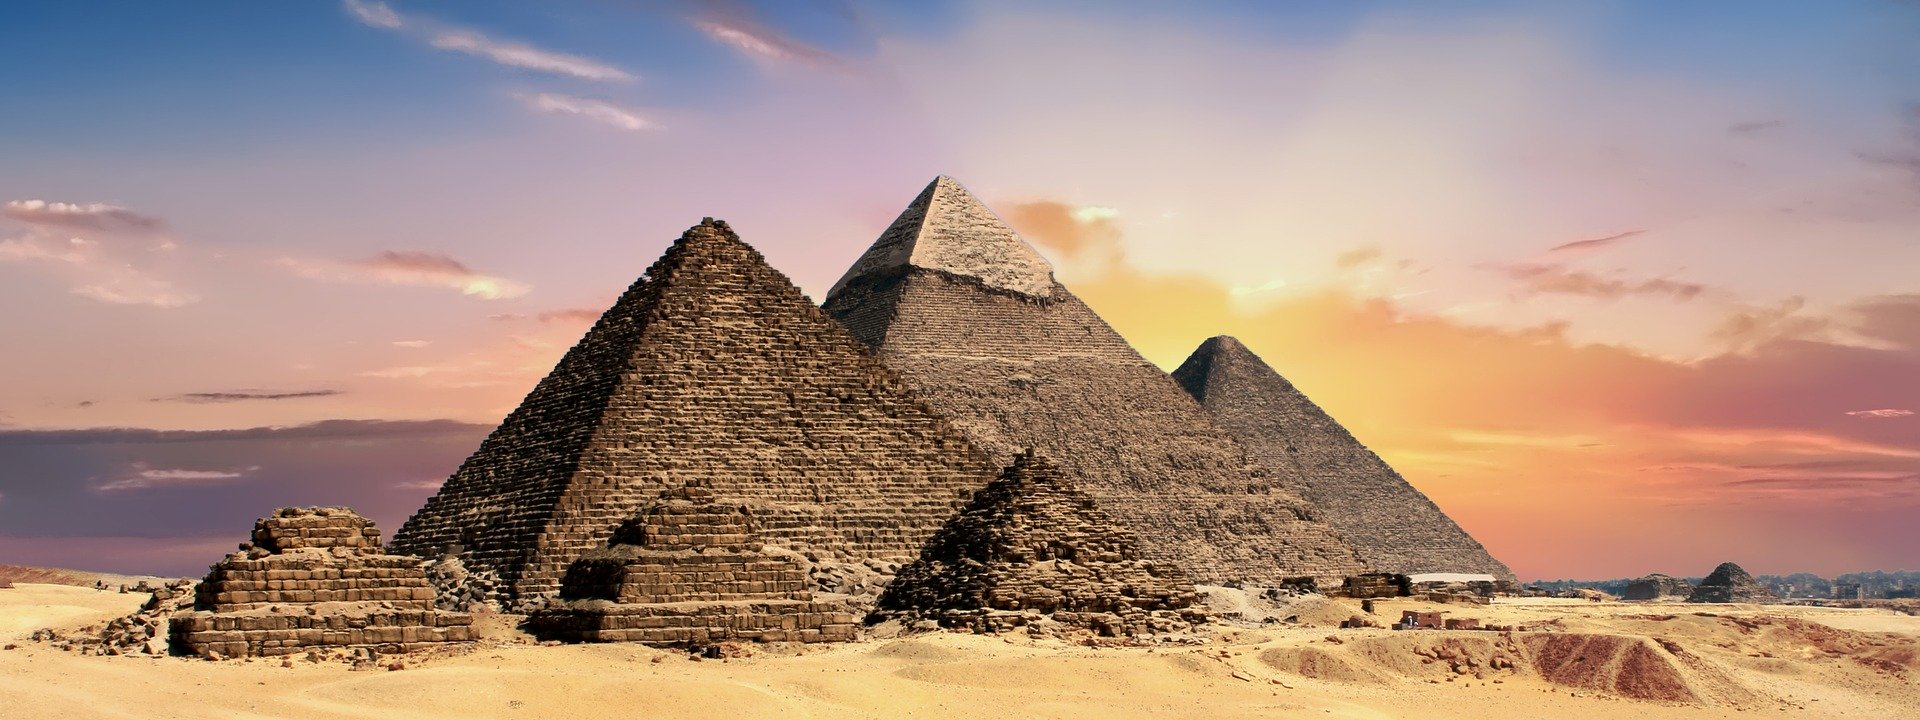 pyramids 2371501 1920 - 【都市伝説】古代エジプト文明のピラミッドとフリーメイソンの関係性